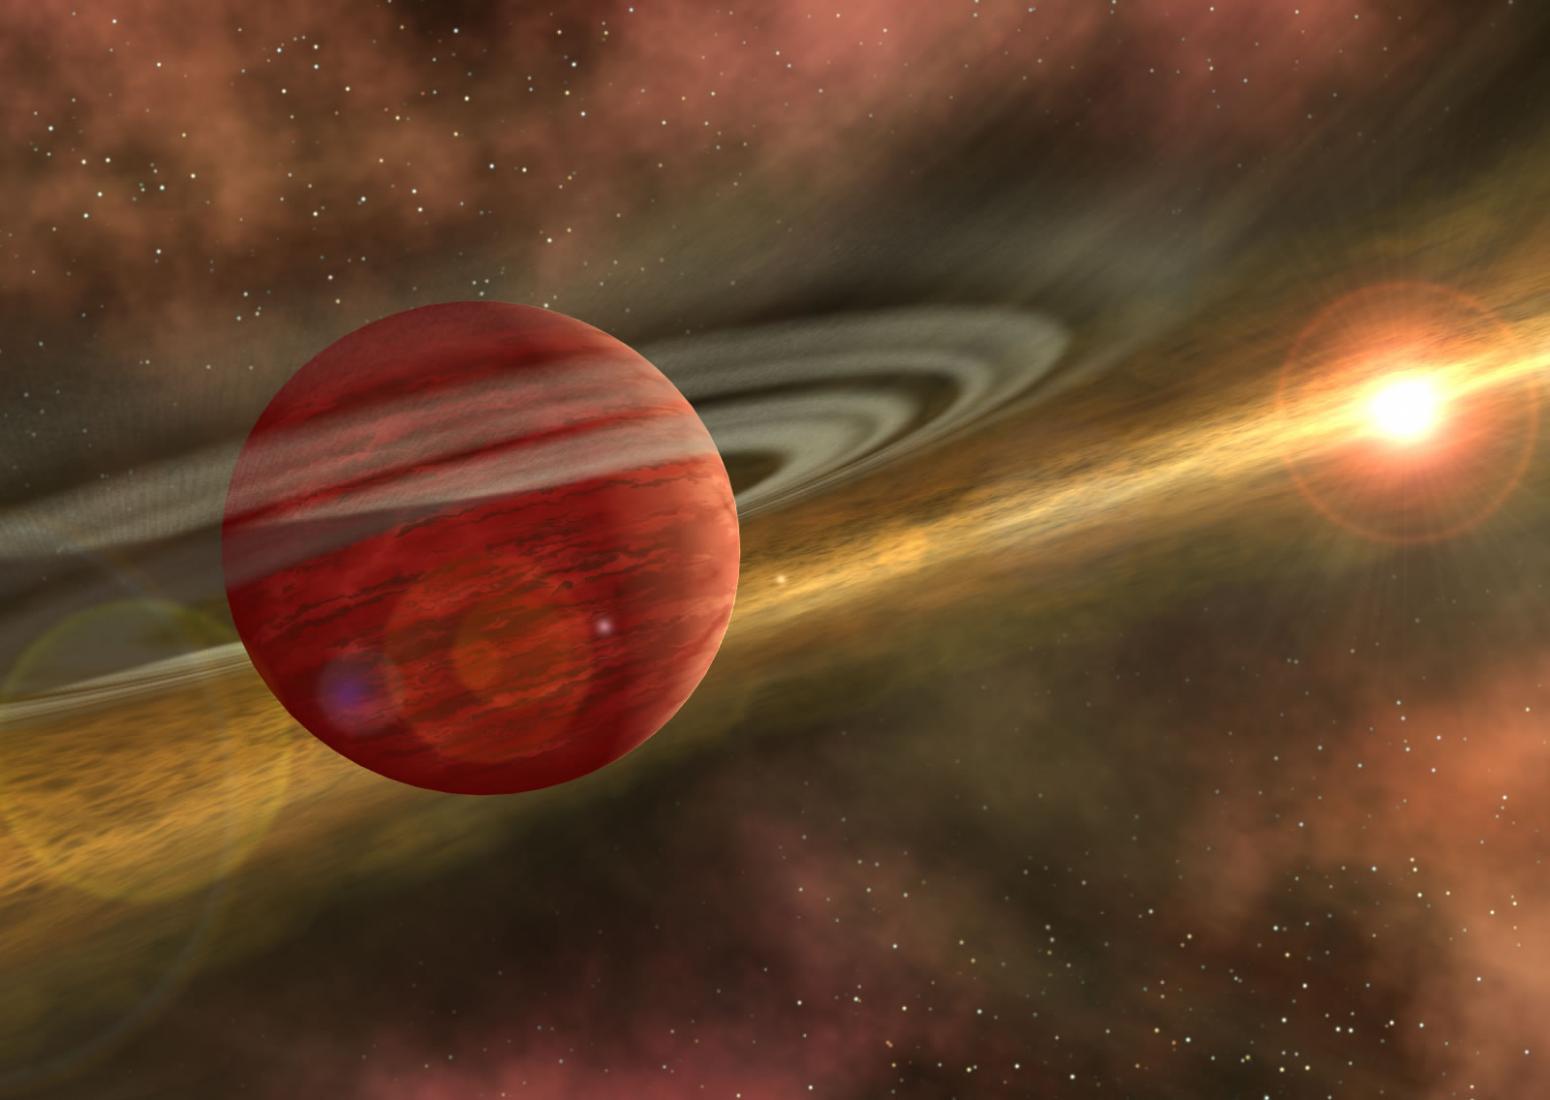 发现轨道半径最大的系外行星HD 106906b